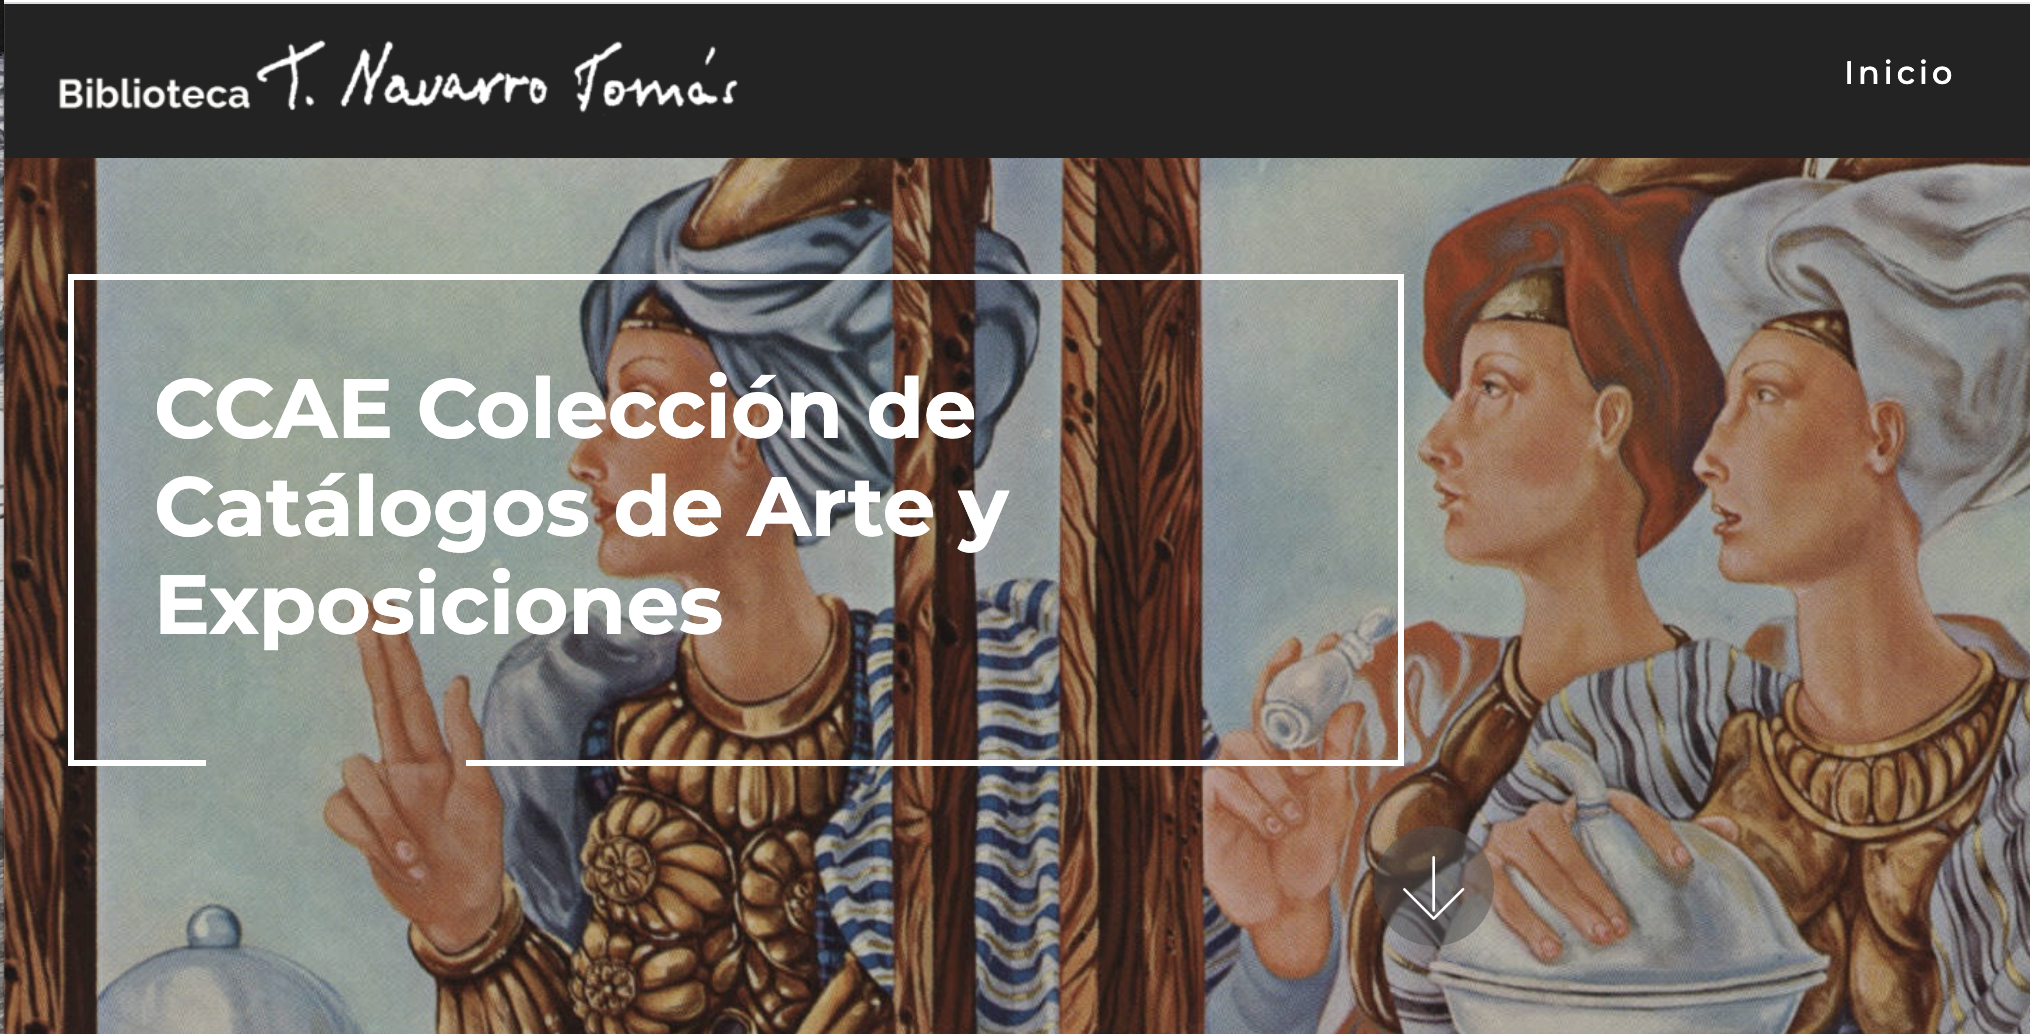 Colección de Catálogos de Arte y Exposiciones de la TNT